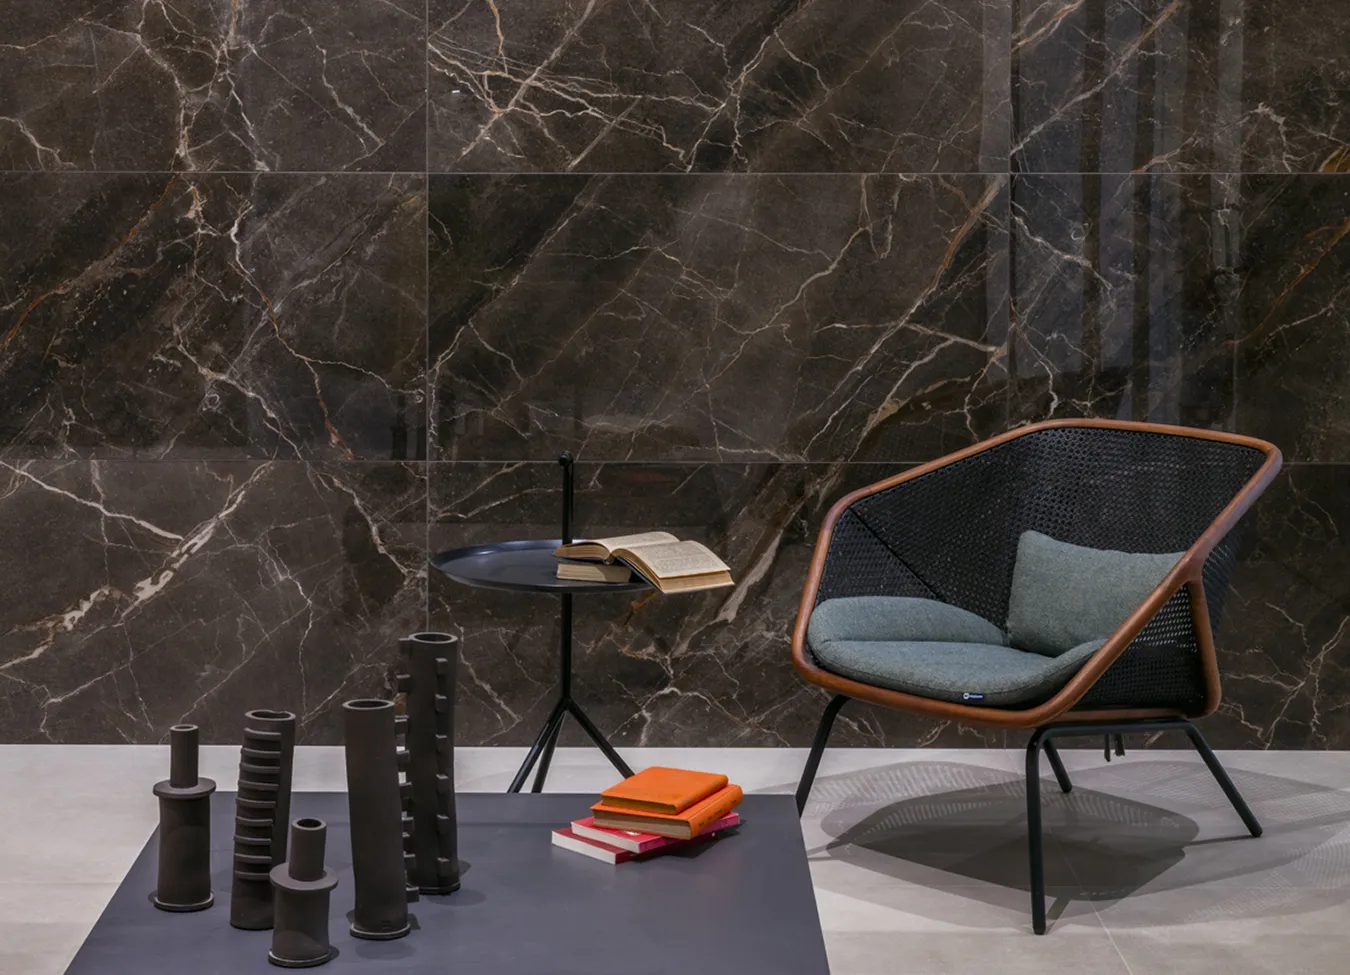 Mur sophistiqué en grès cérame effet marbre Ombra Moca de la collection 9cento, avec fauteuil design et accessoires modernes.